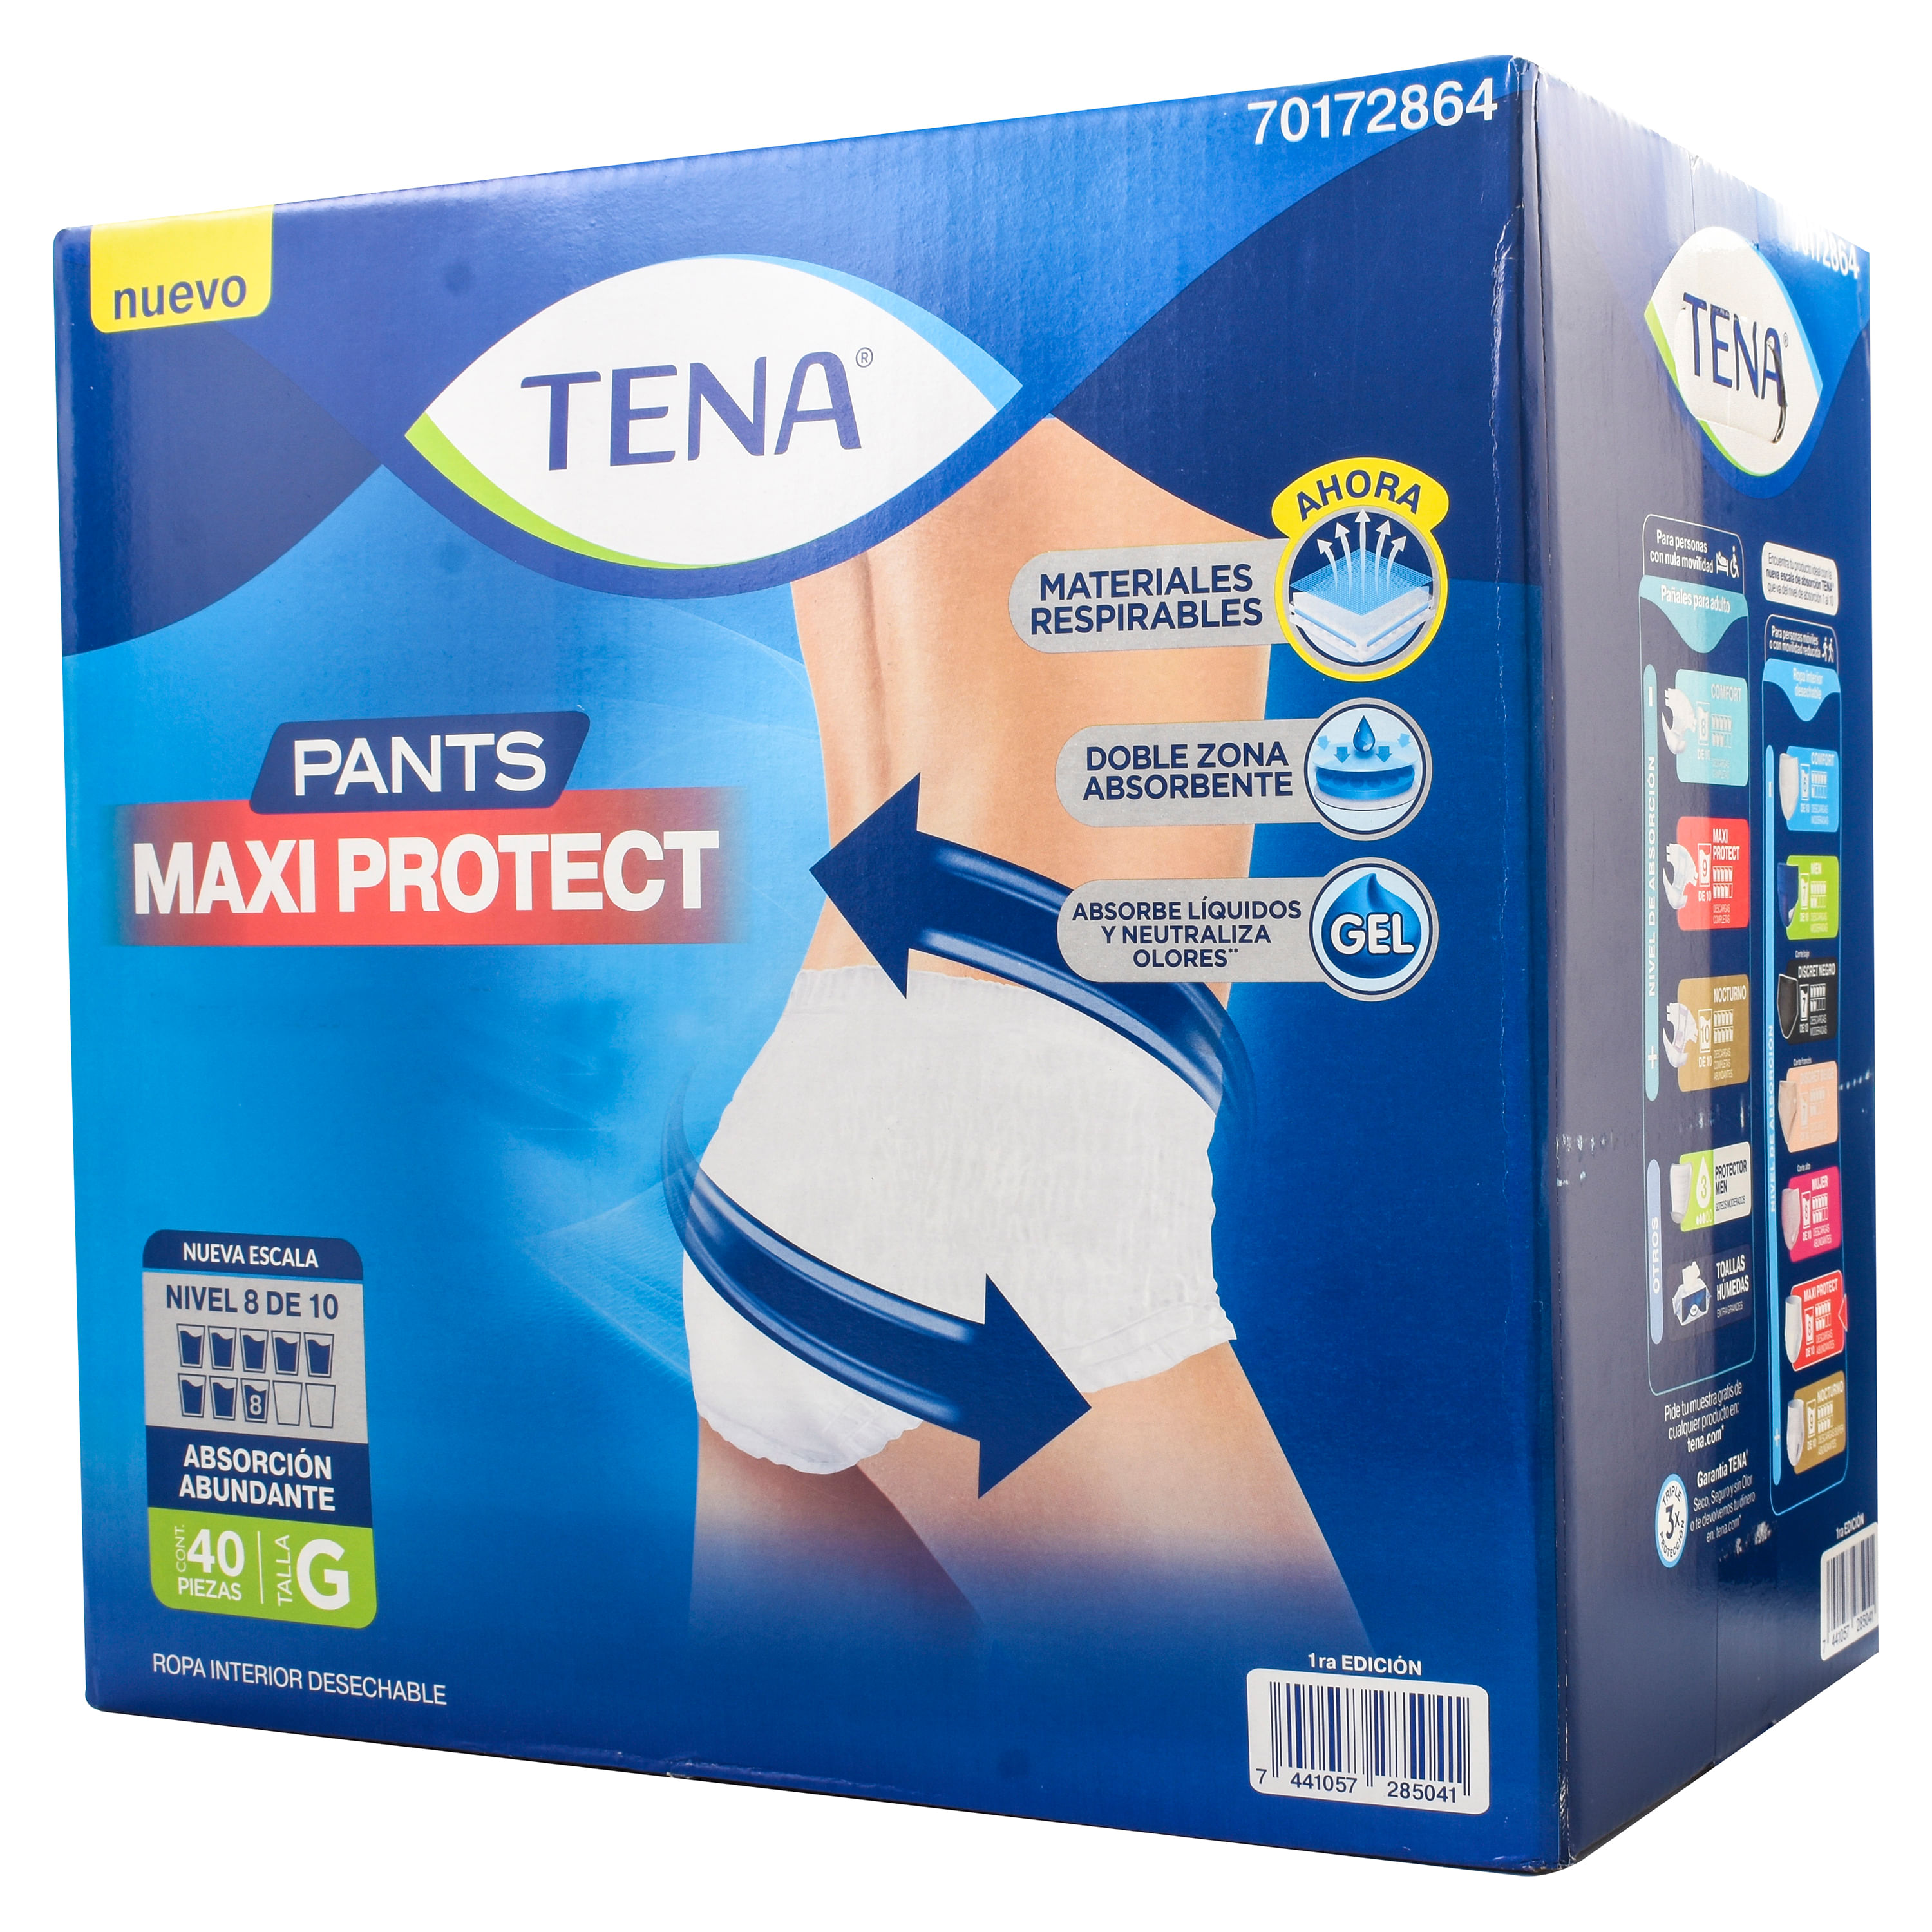 Tena-Pants-Maxi-Protec-G-40-Unidades-1-15908